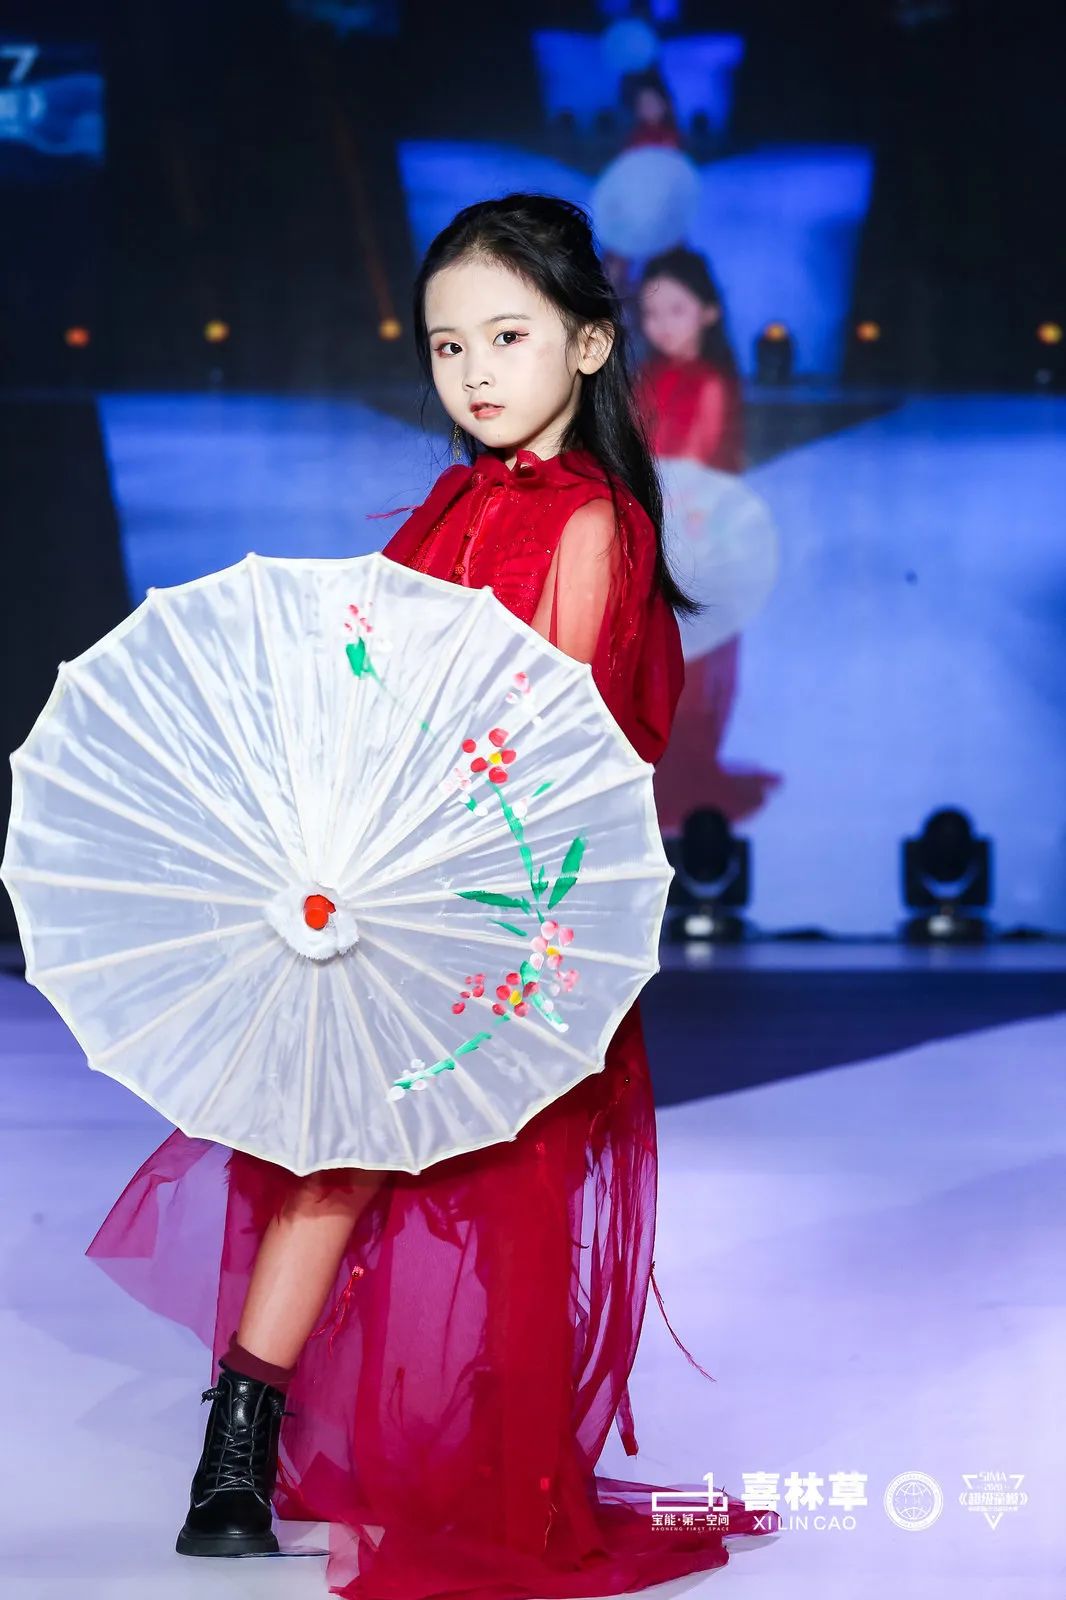 10/0420202020/10/04中国国际《超级童模》少儿模特大赛经过两大主题